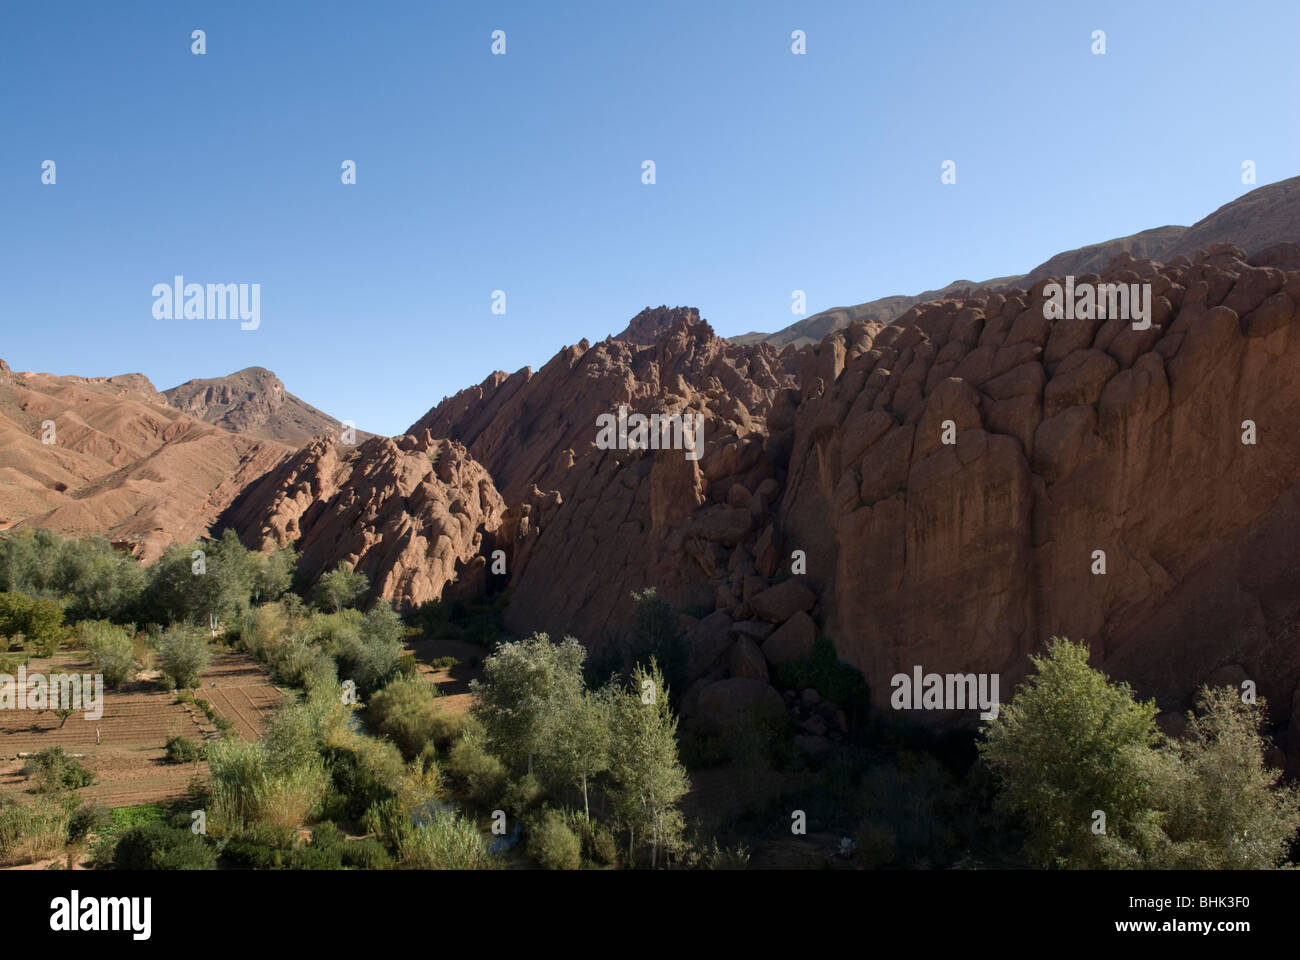 Les doigts de singe (Doigts de singes), des formations rocheuses, des montagnes du Haut Atlas, au Maroc. Banque D'Images